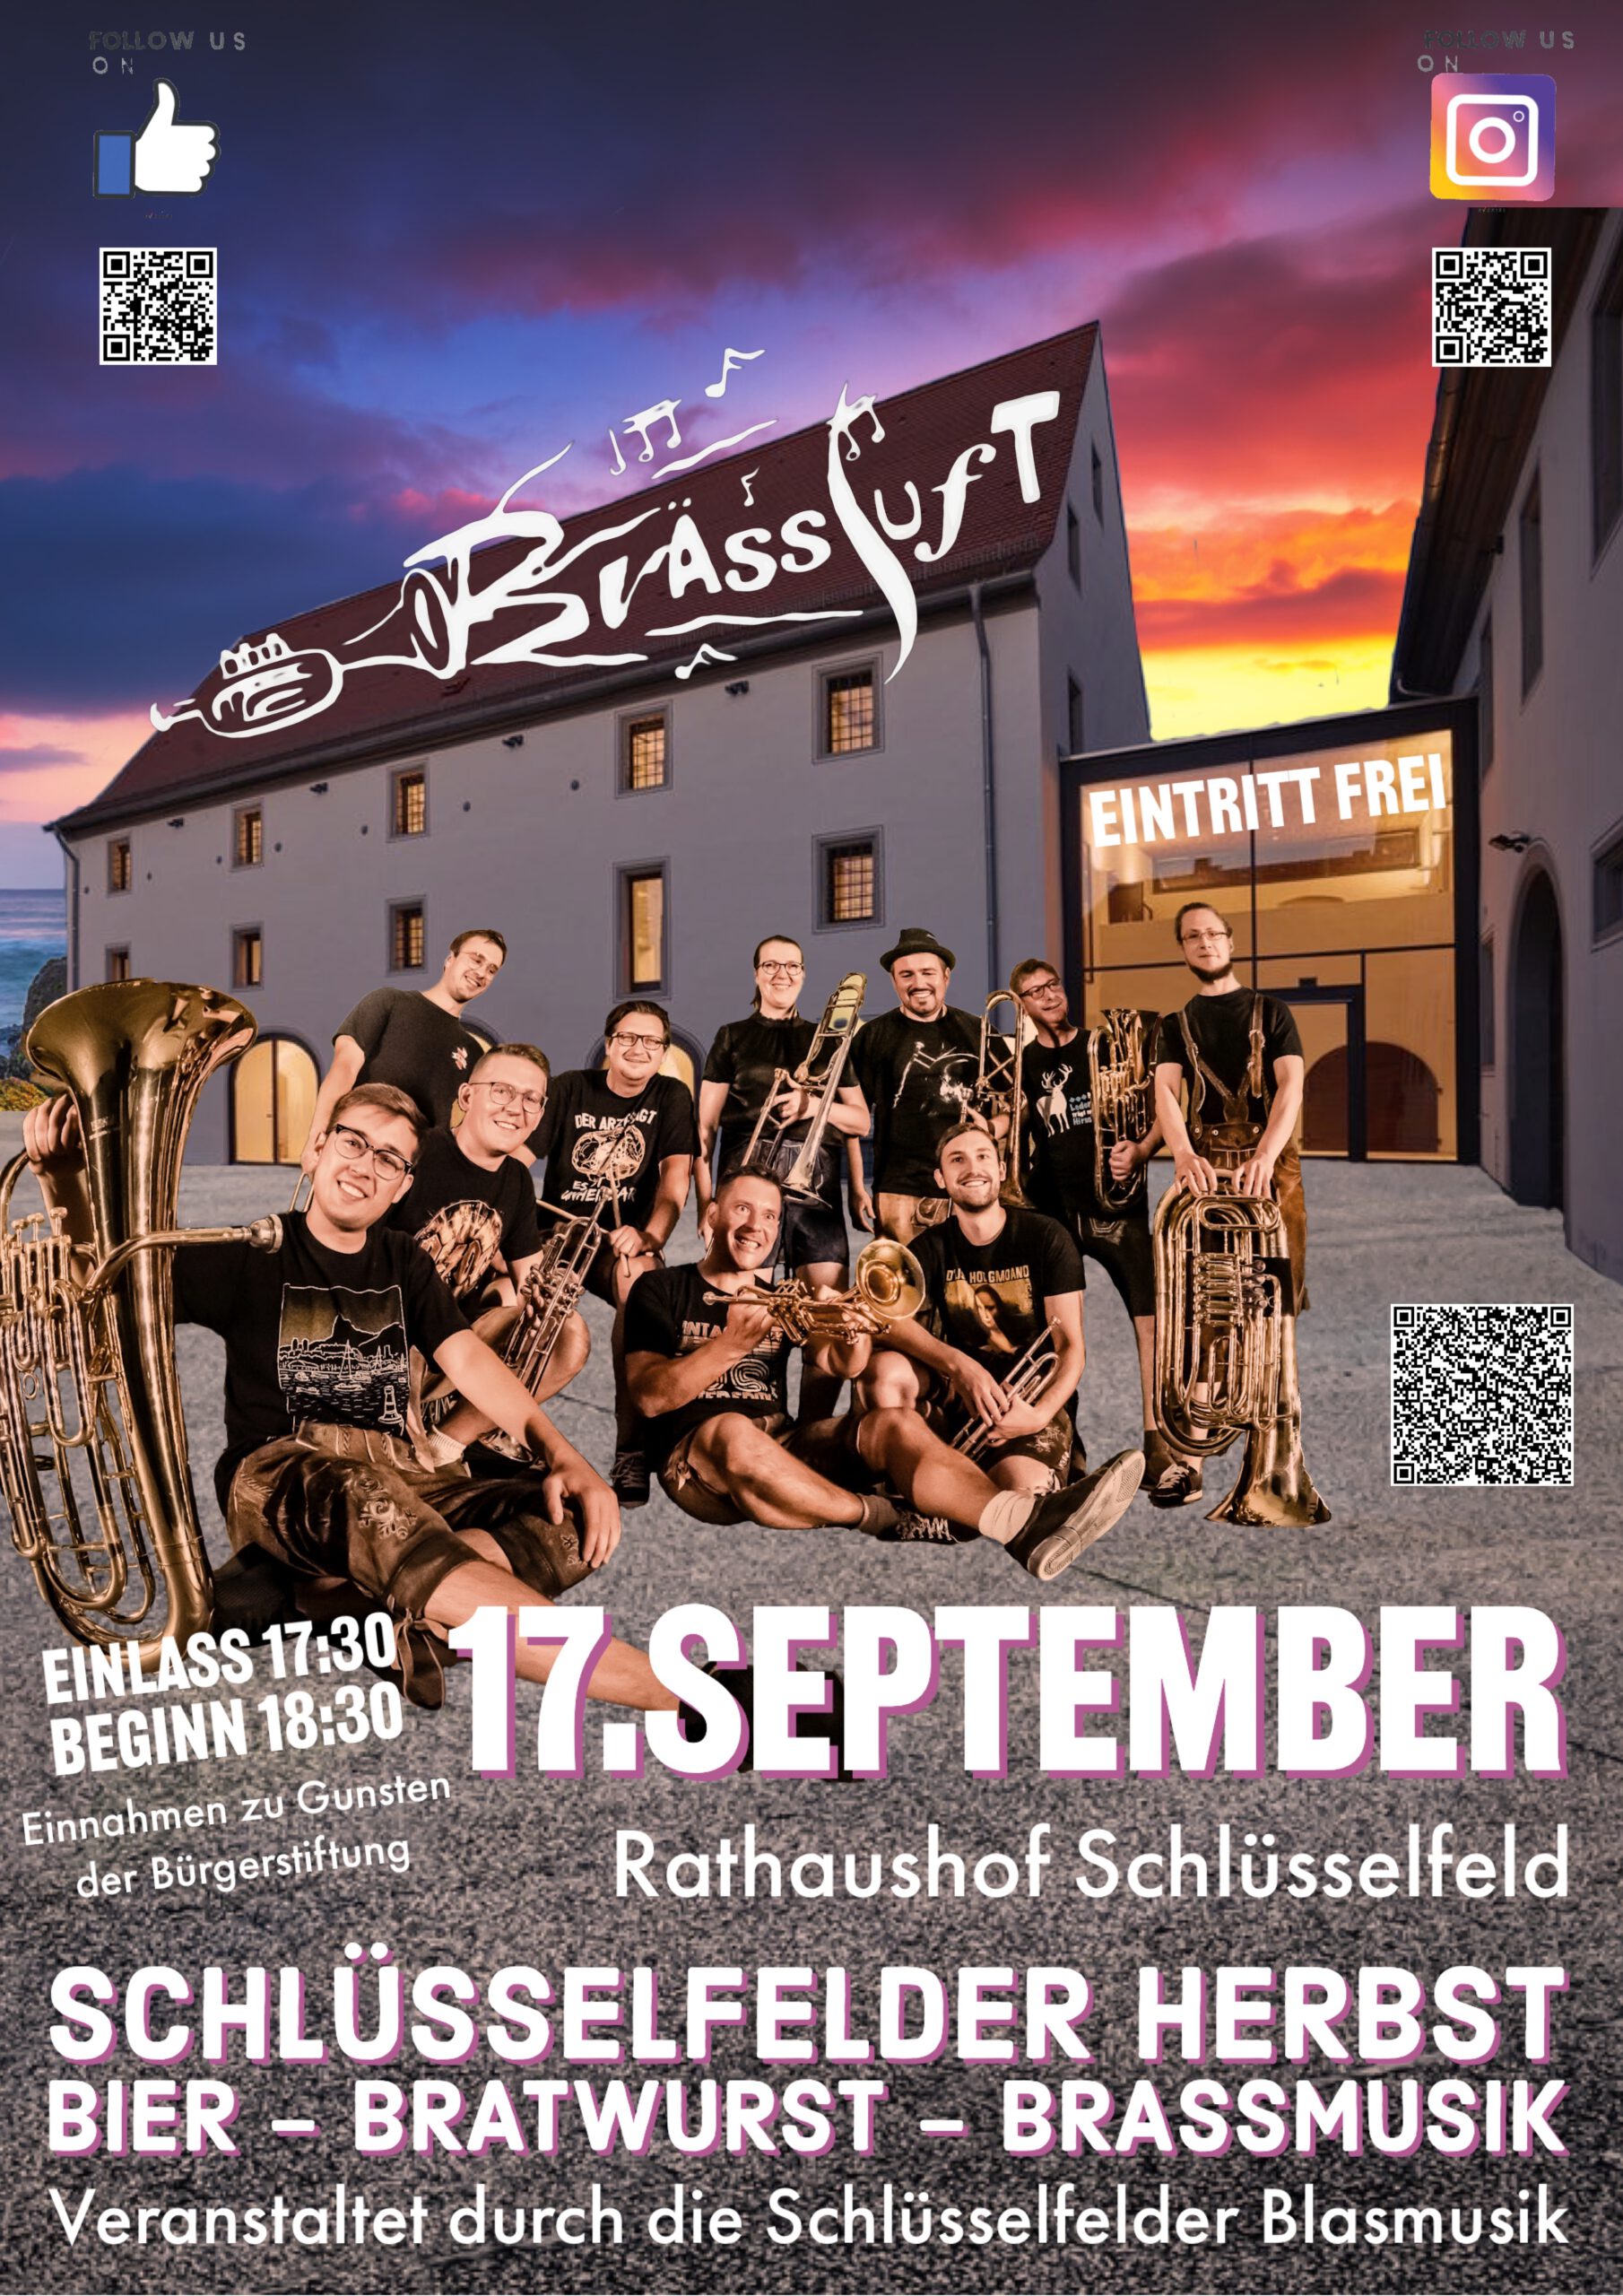 Brässluft - Schlüsselfelder Herbst mit Bier, Bratwurst und Brassmusik